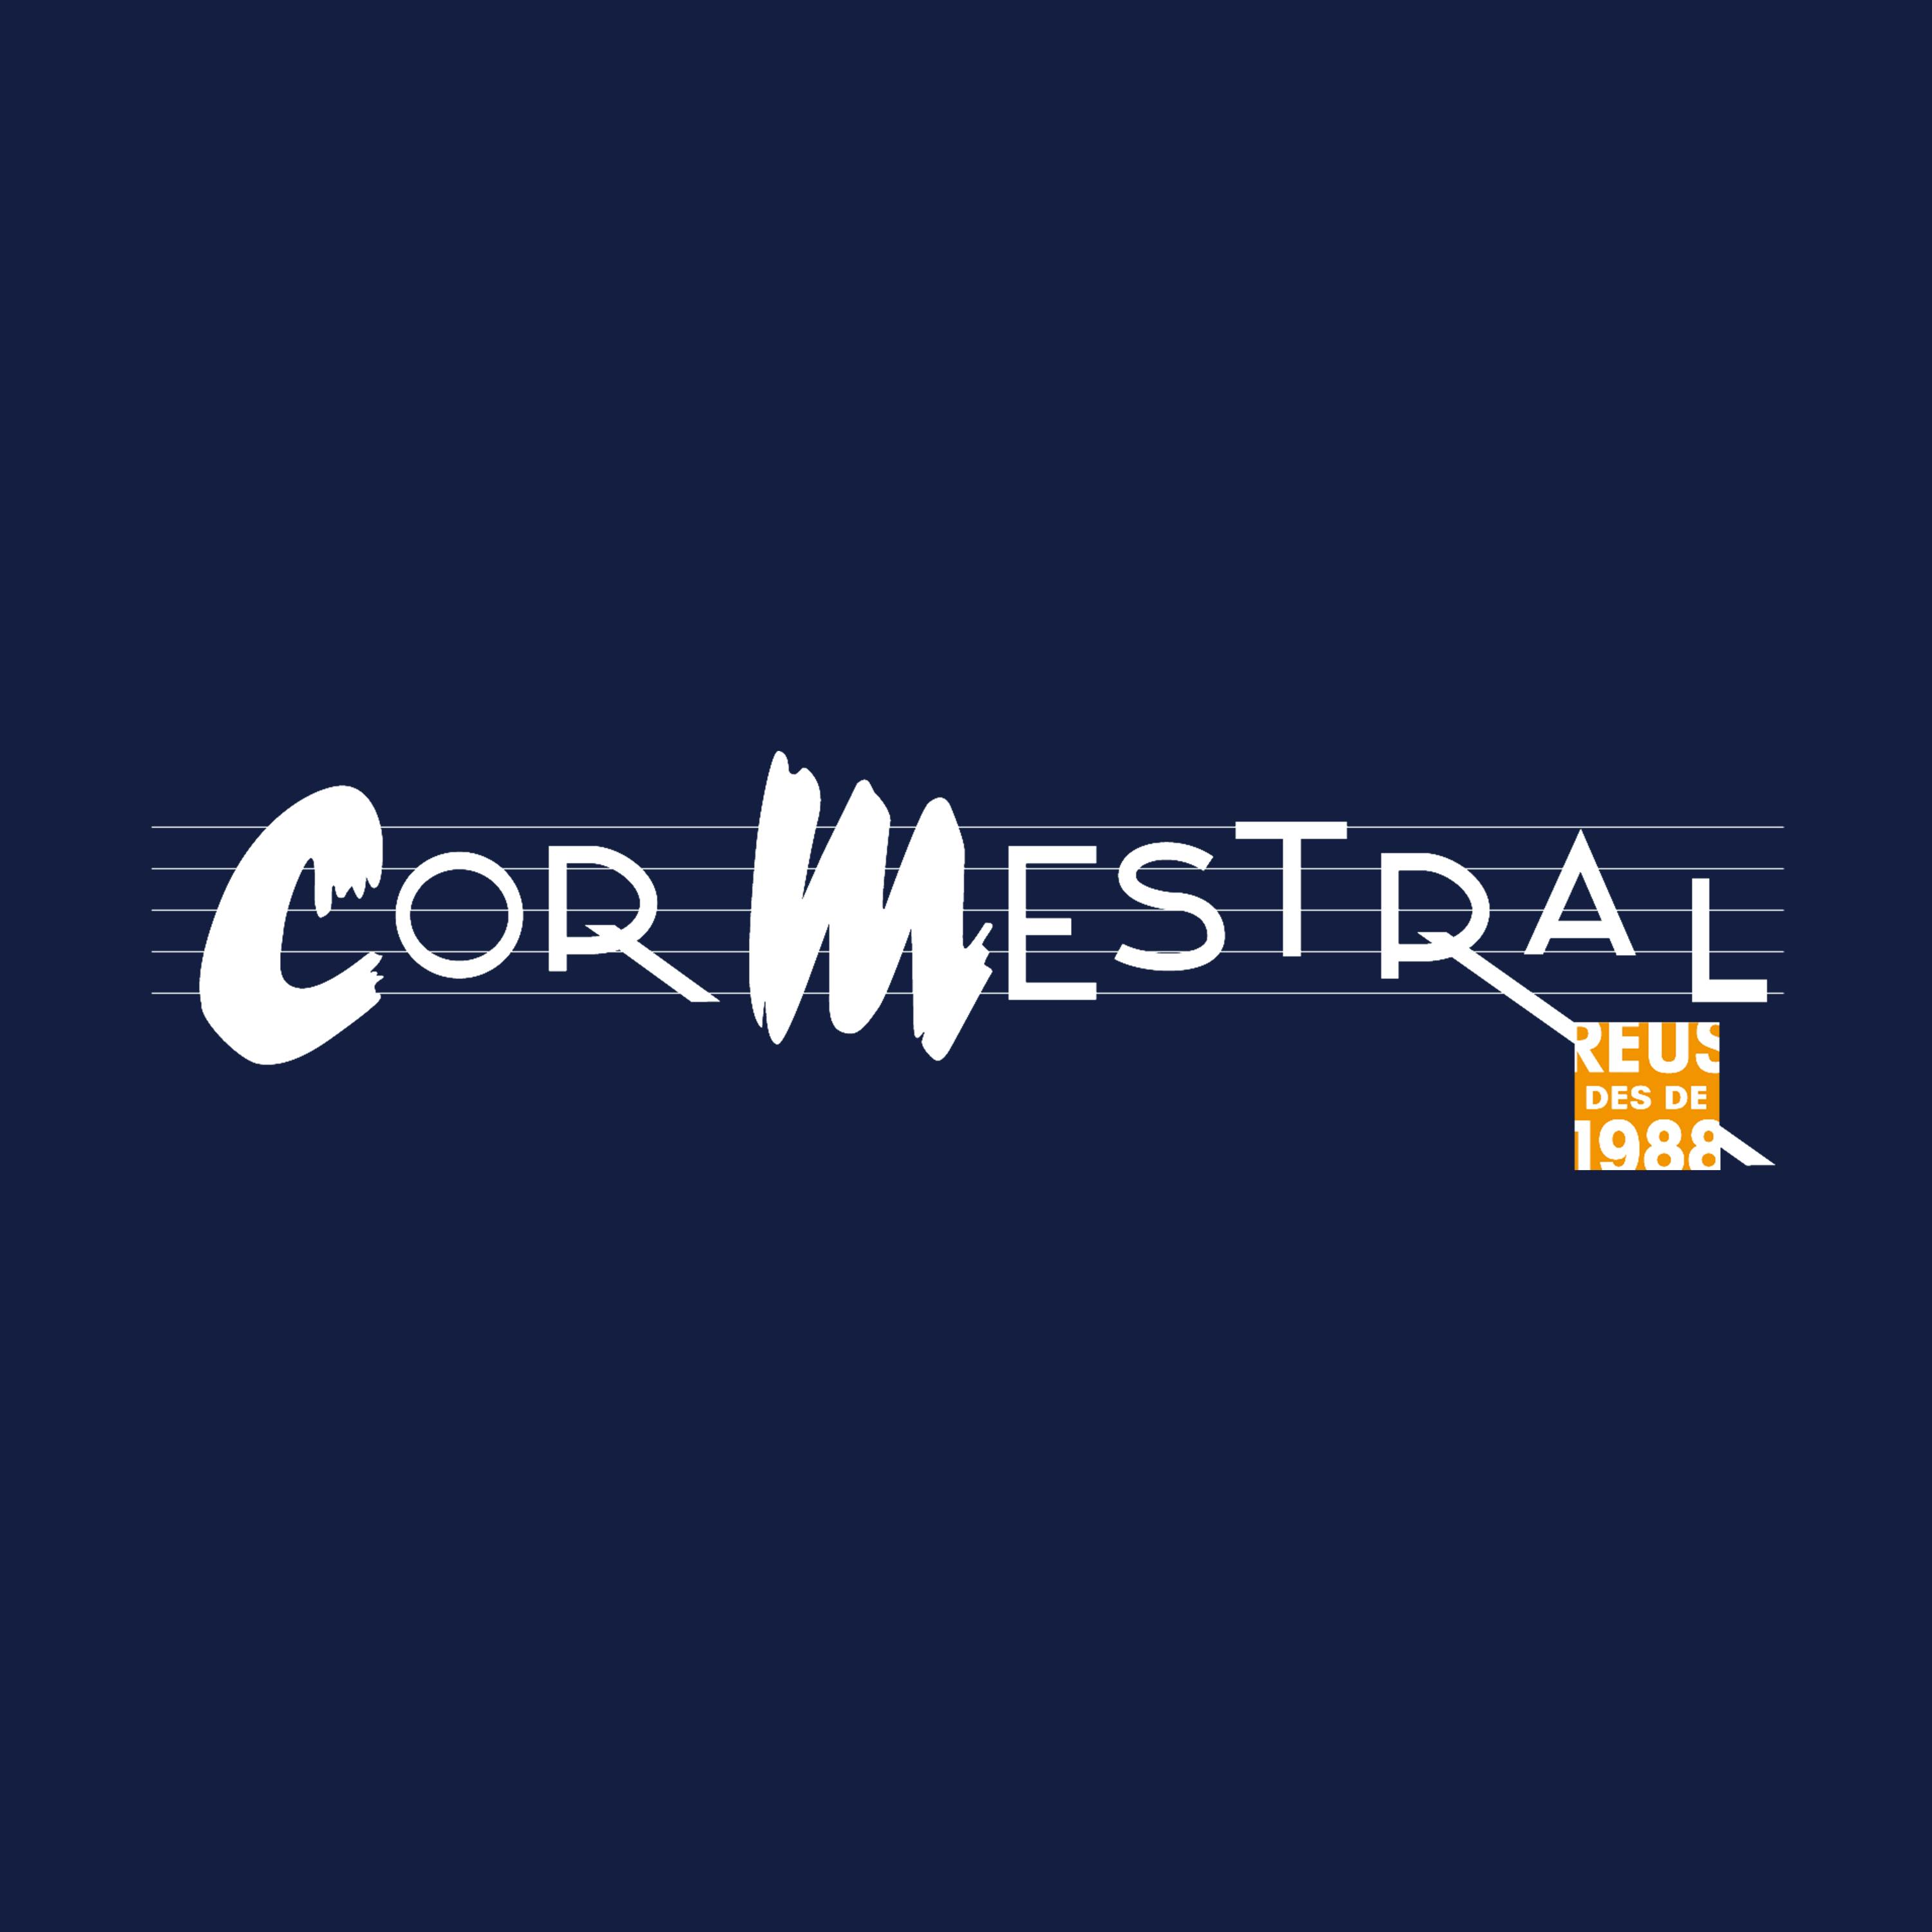 Cor Mestral